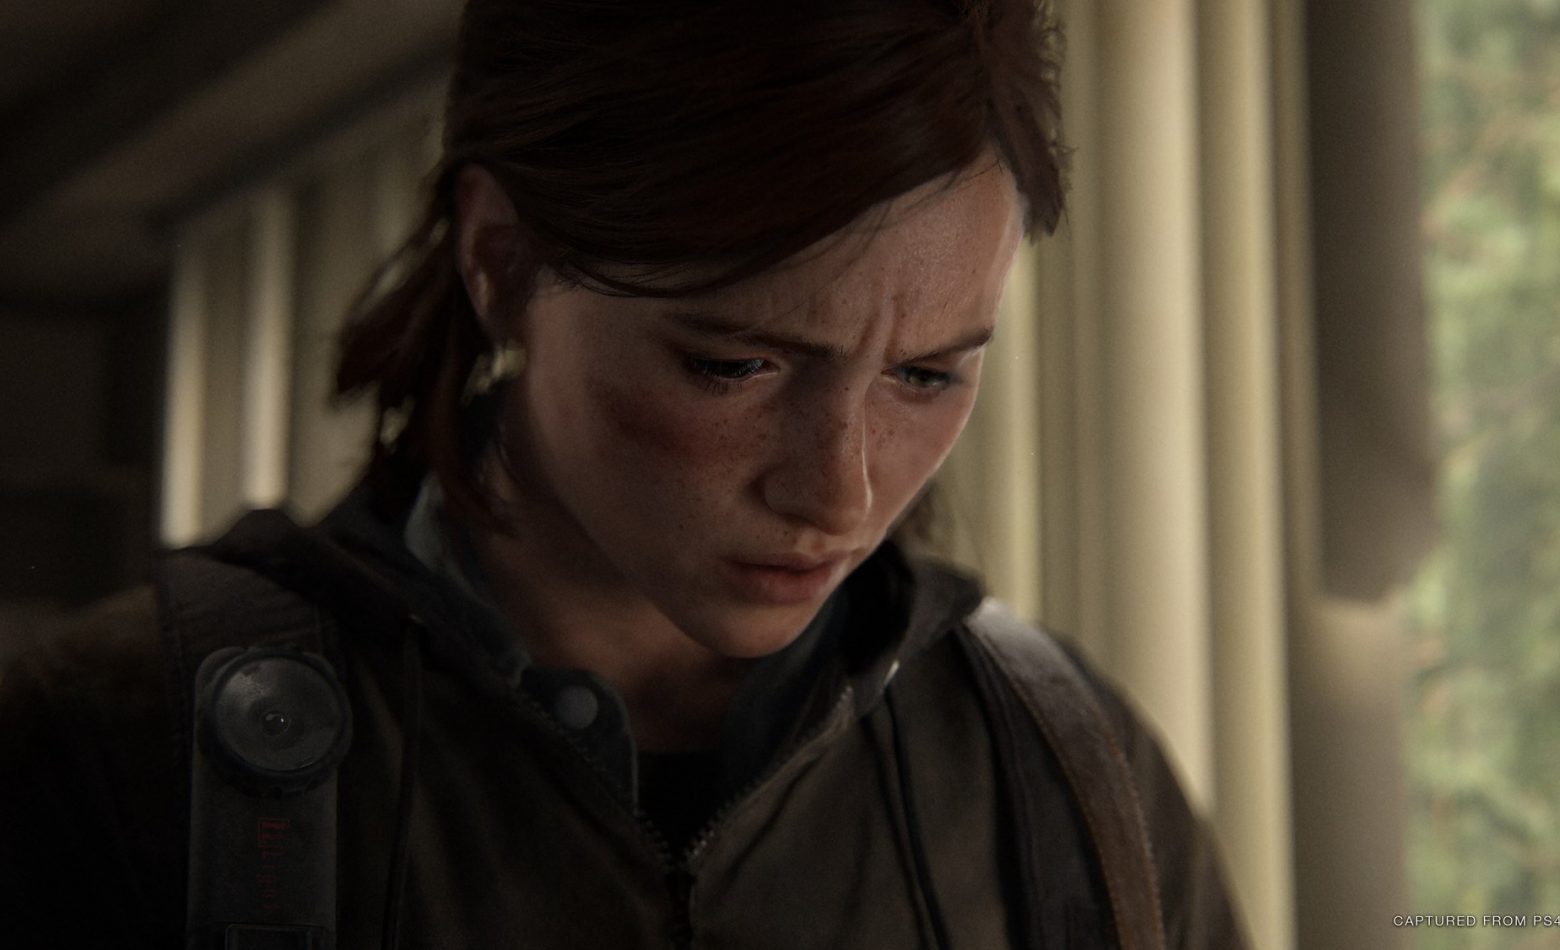 The Last of Us Part 2: o início do ciclo da violência [Gameplay]